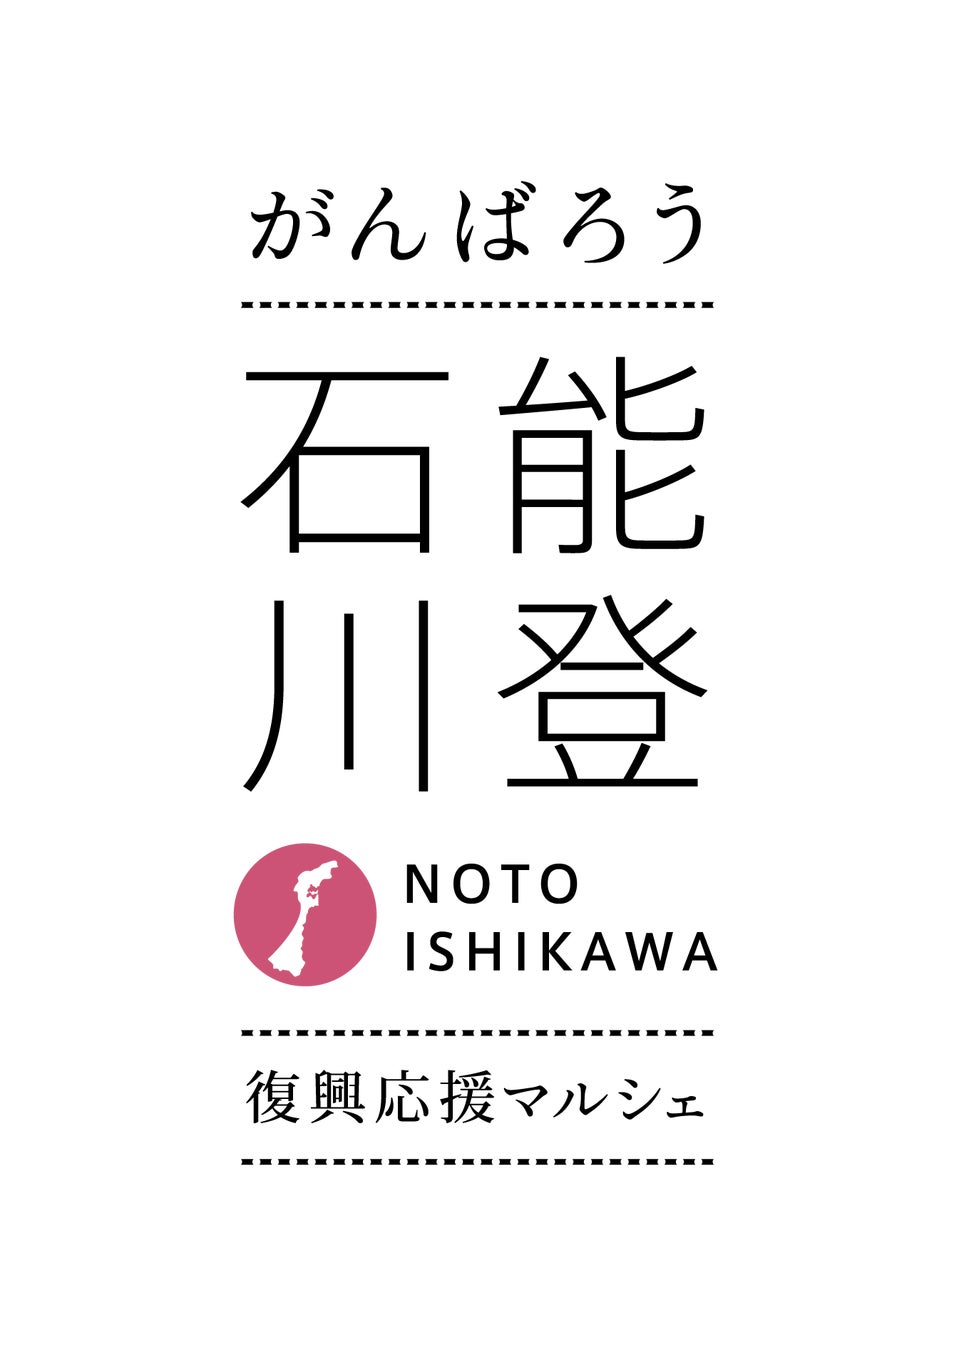 東京日本橋で、がんばろう 能登 石川　復興応援マルシェ第2弾「能登・石川の食と工芸」開催！